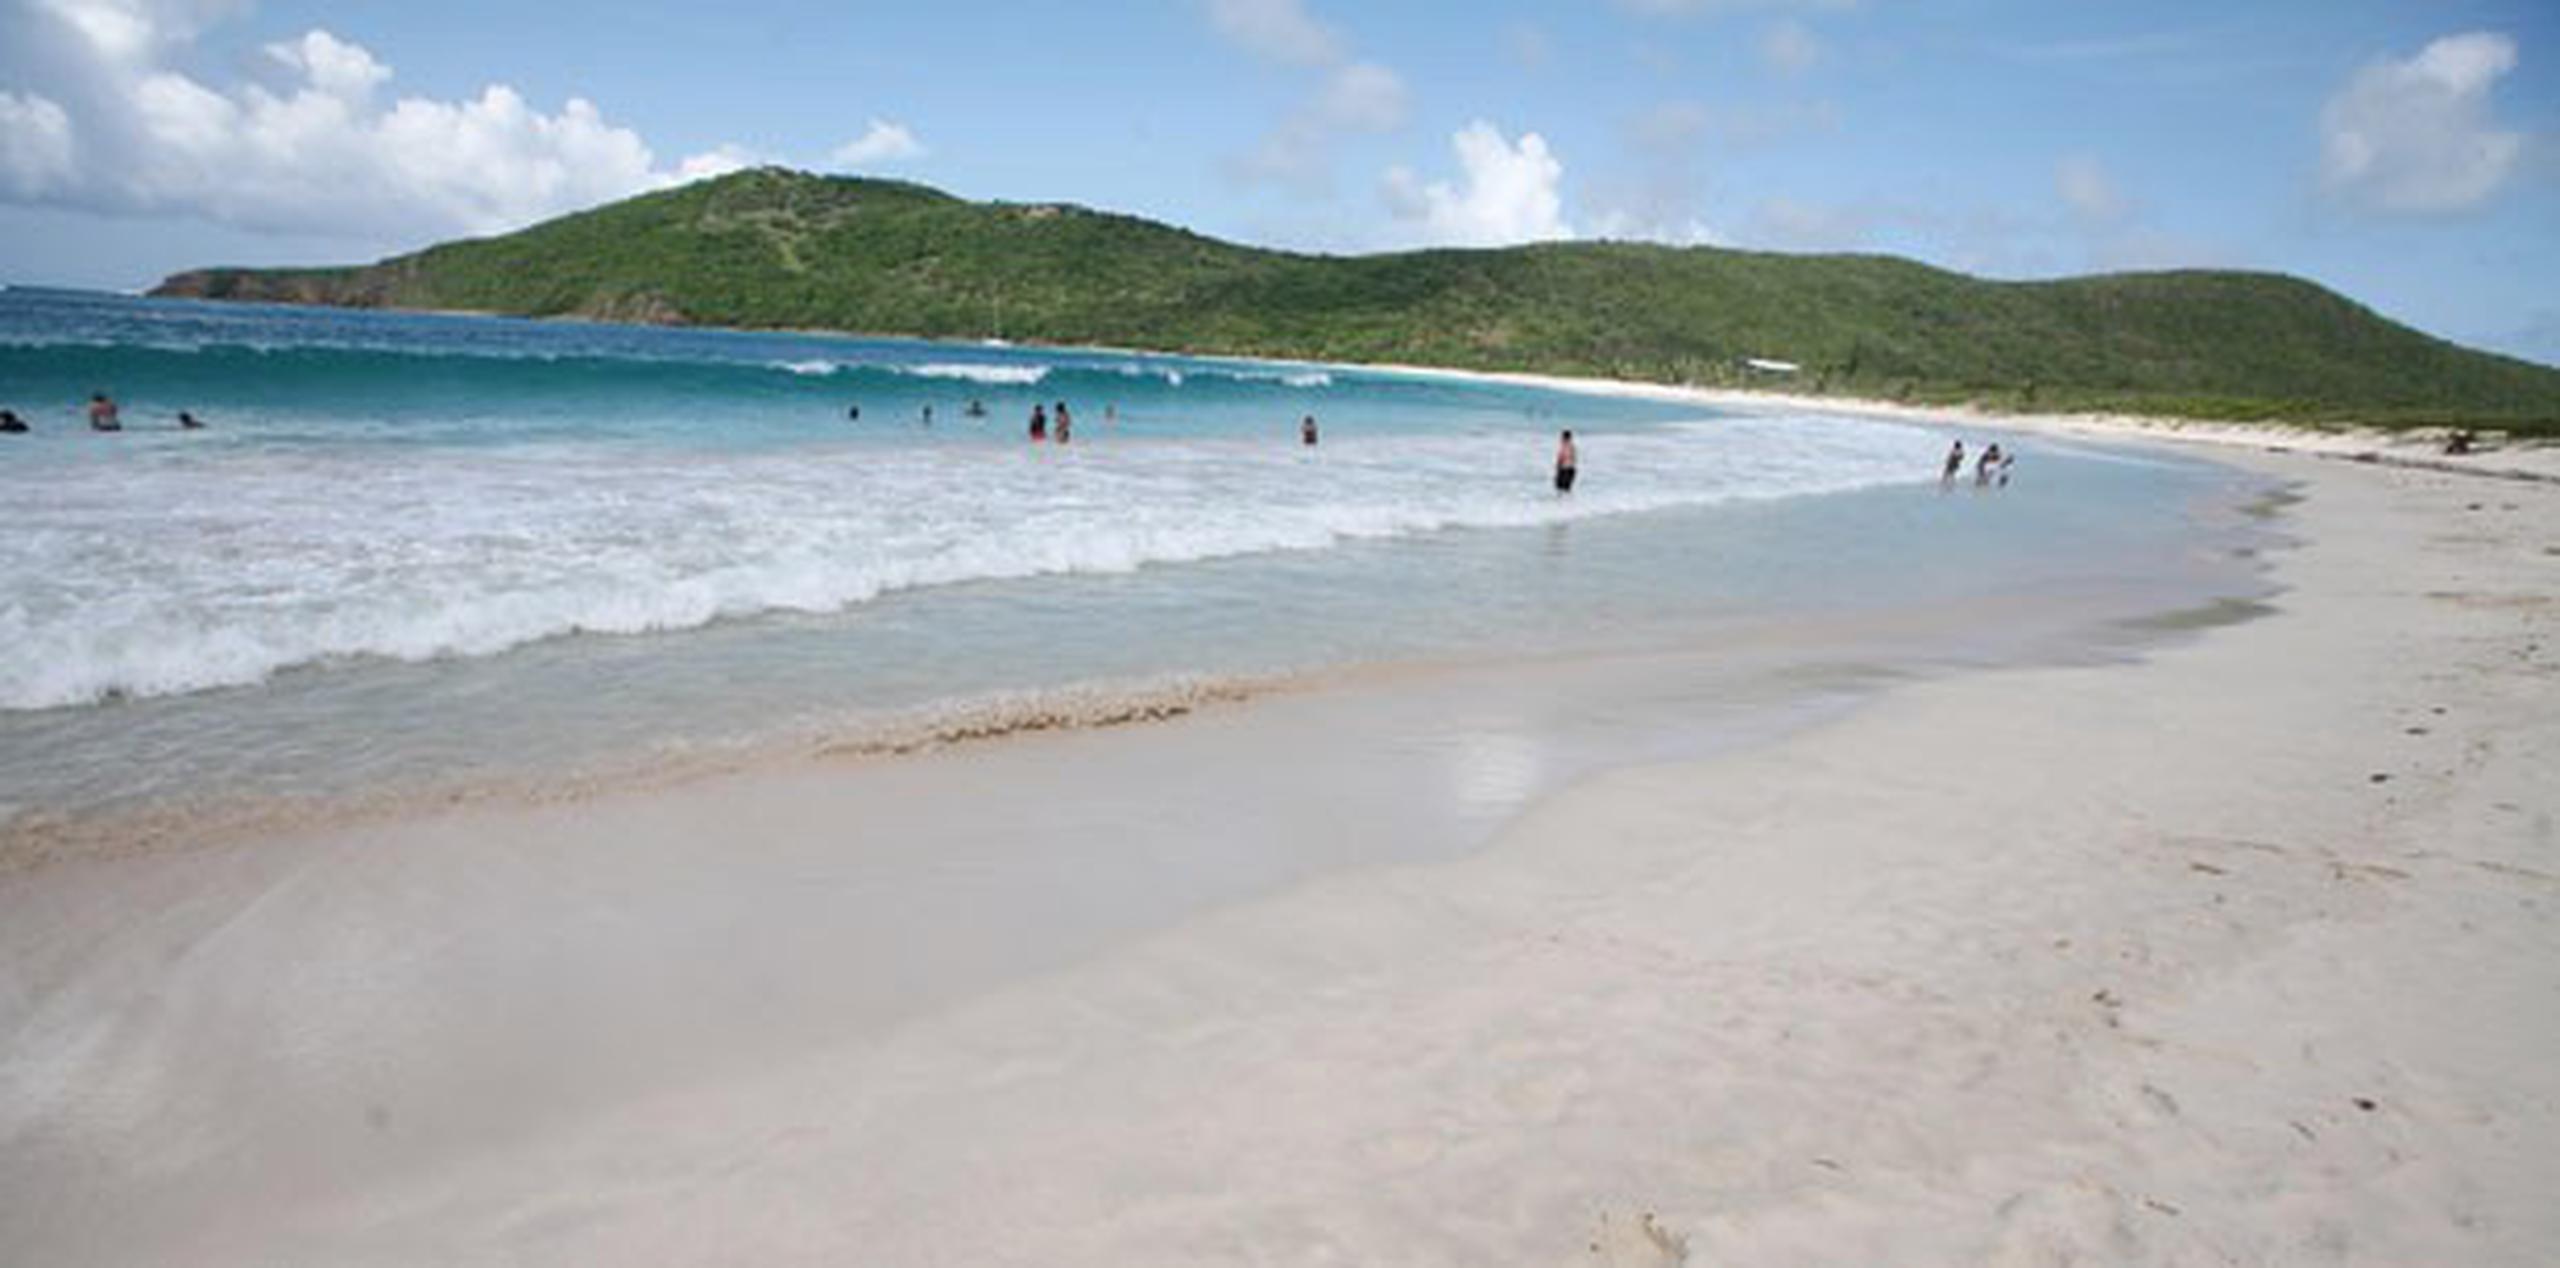 El Culebra Sports Challenge es el primer evento que llega a la isla municipio para atraer al atleta turista a un ambiente ecológico. (Archivo)